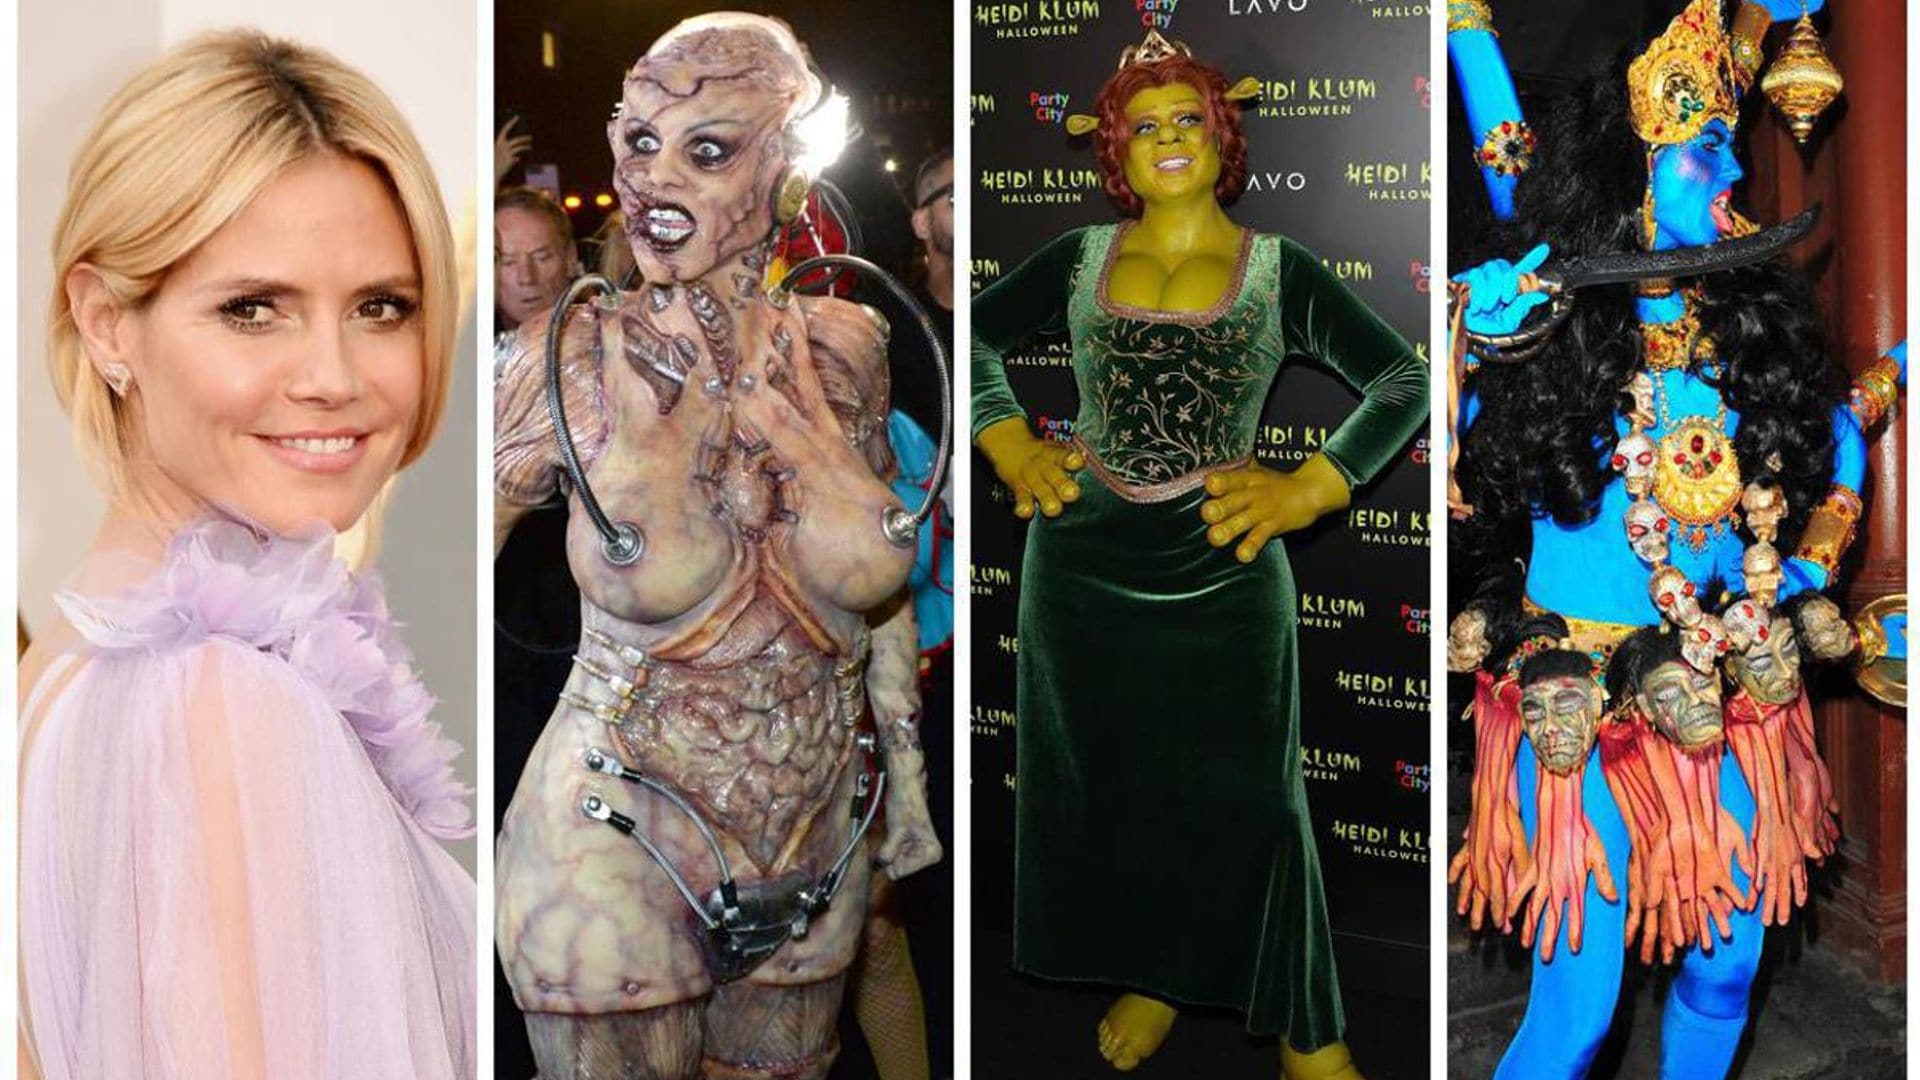 Heidi Klum’s Halloween costumes over the years